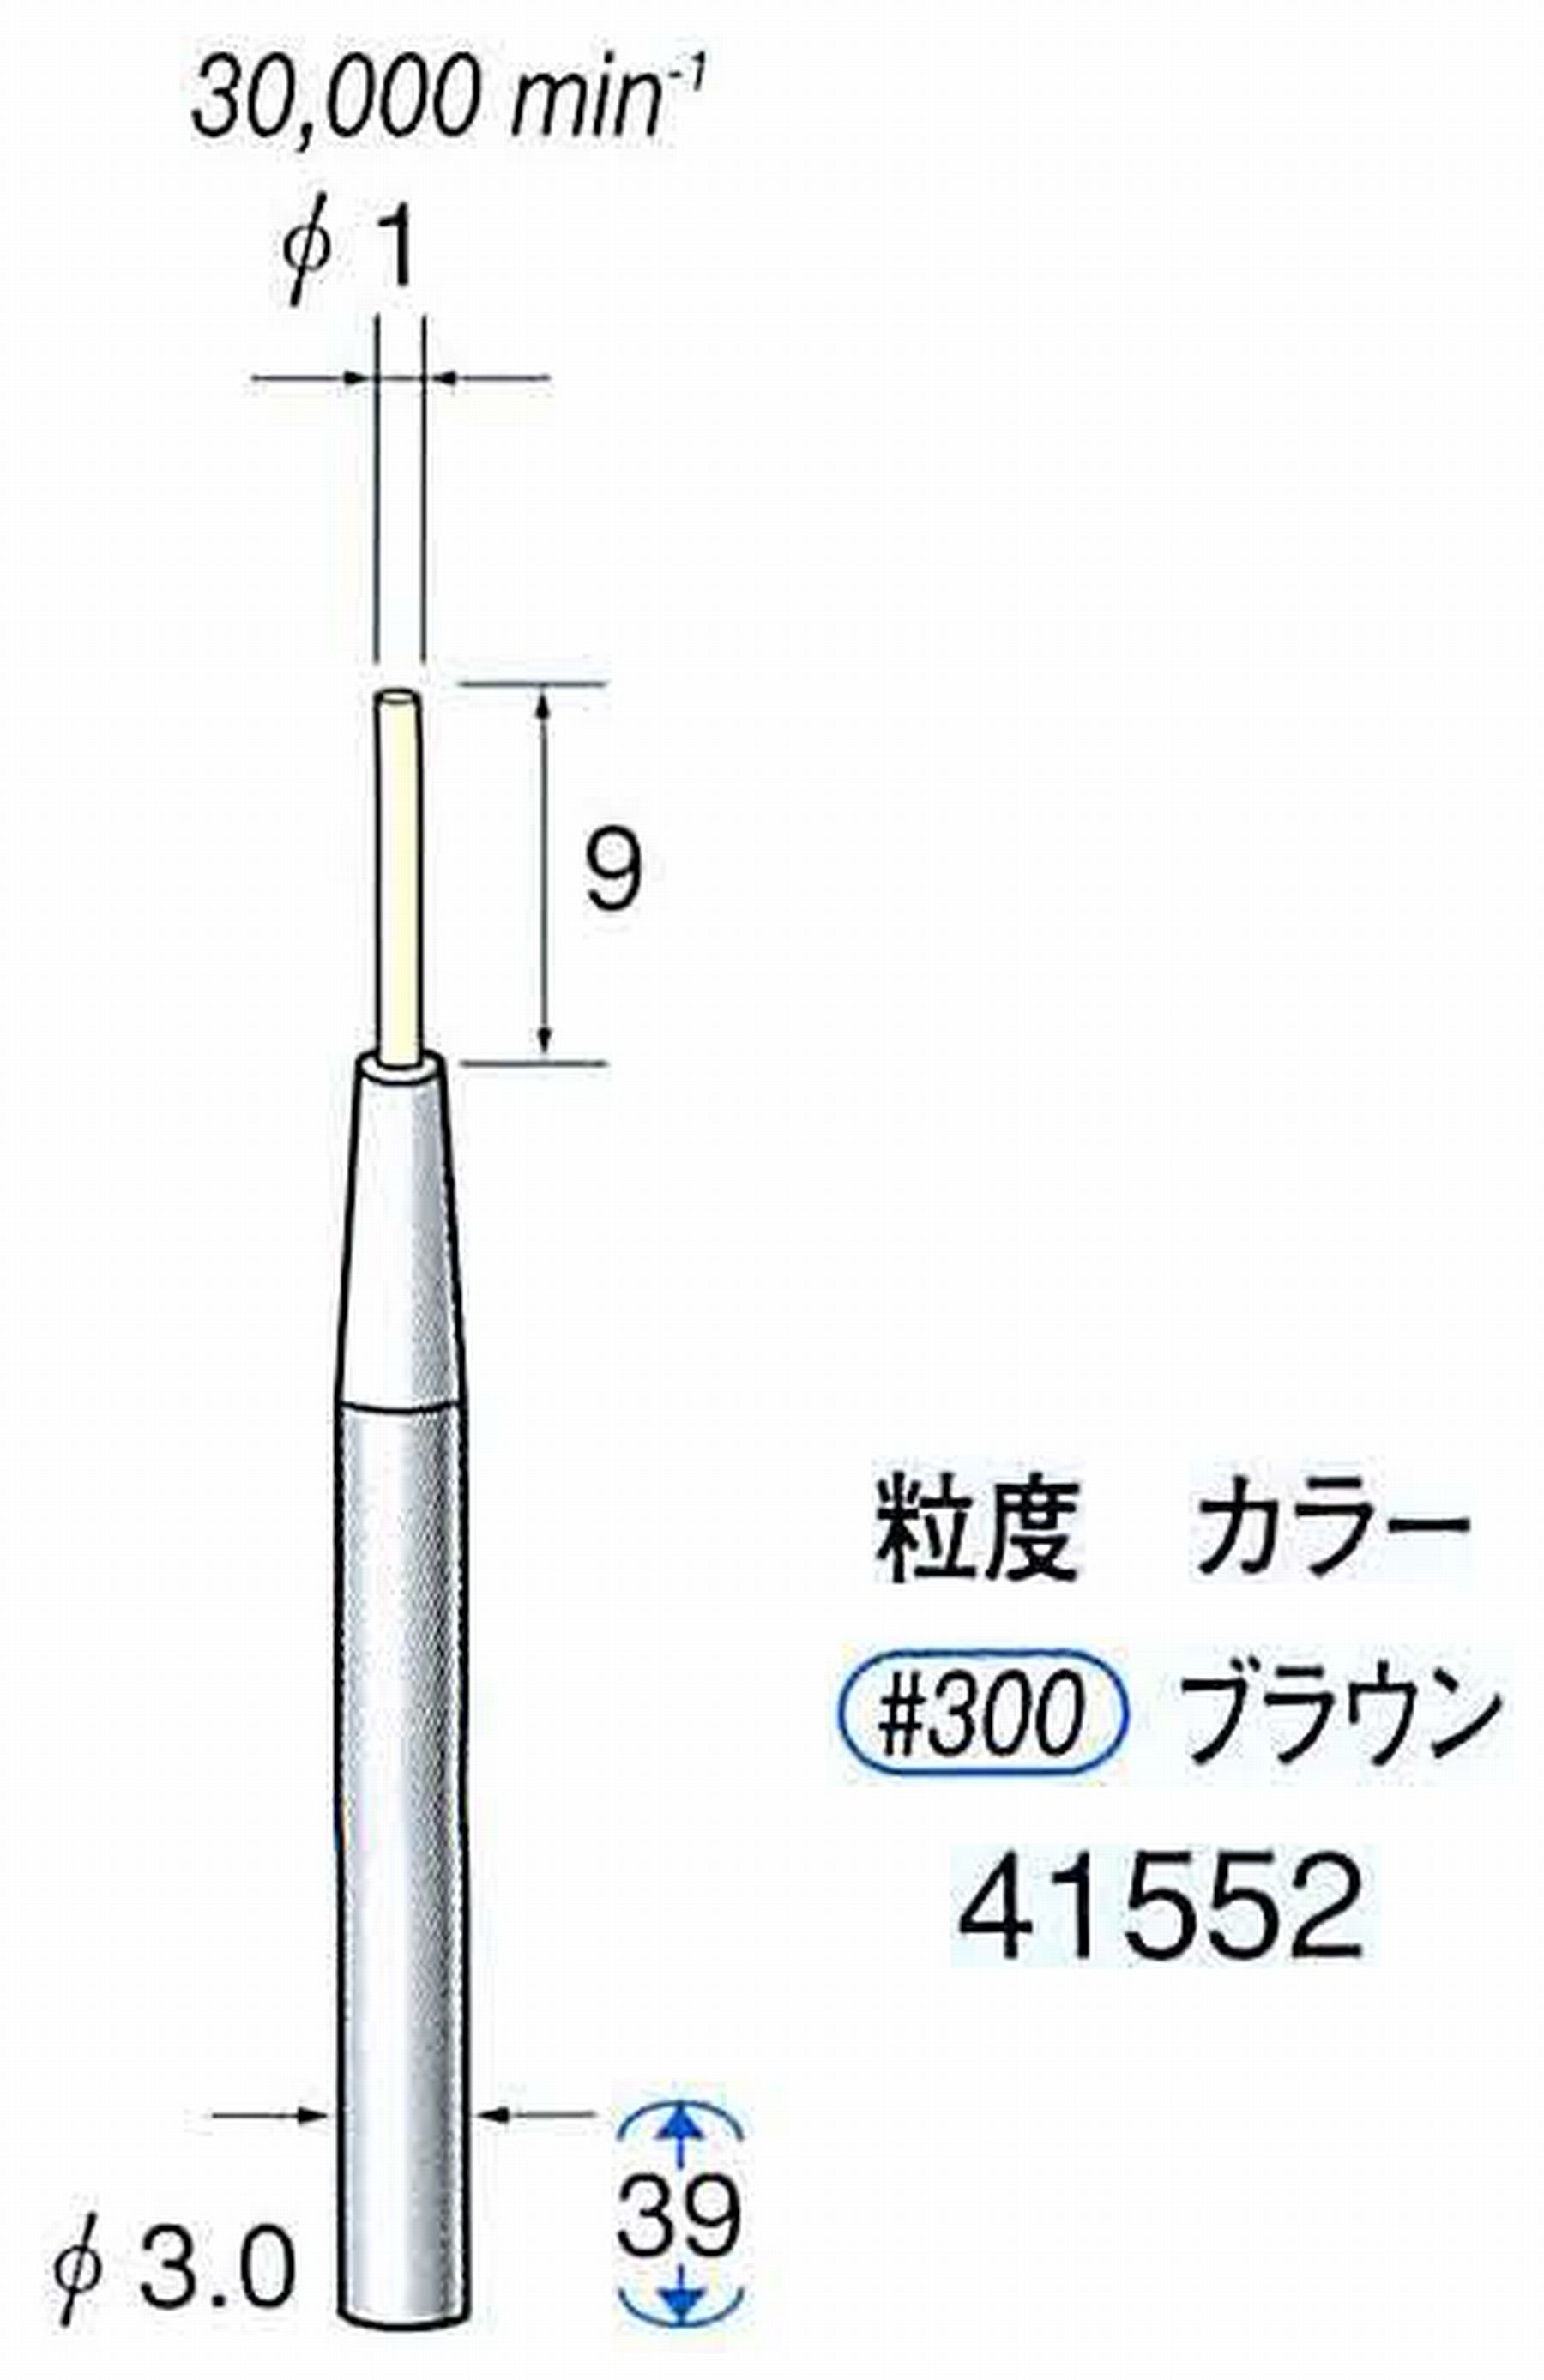 ナカニシ/NAKANISHI セラファイバー精密軸付砥石(カラー ブラウン) 軸径(シャンク) φ3.0mm 41552